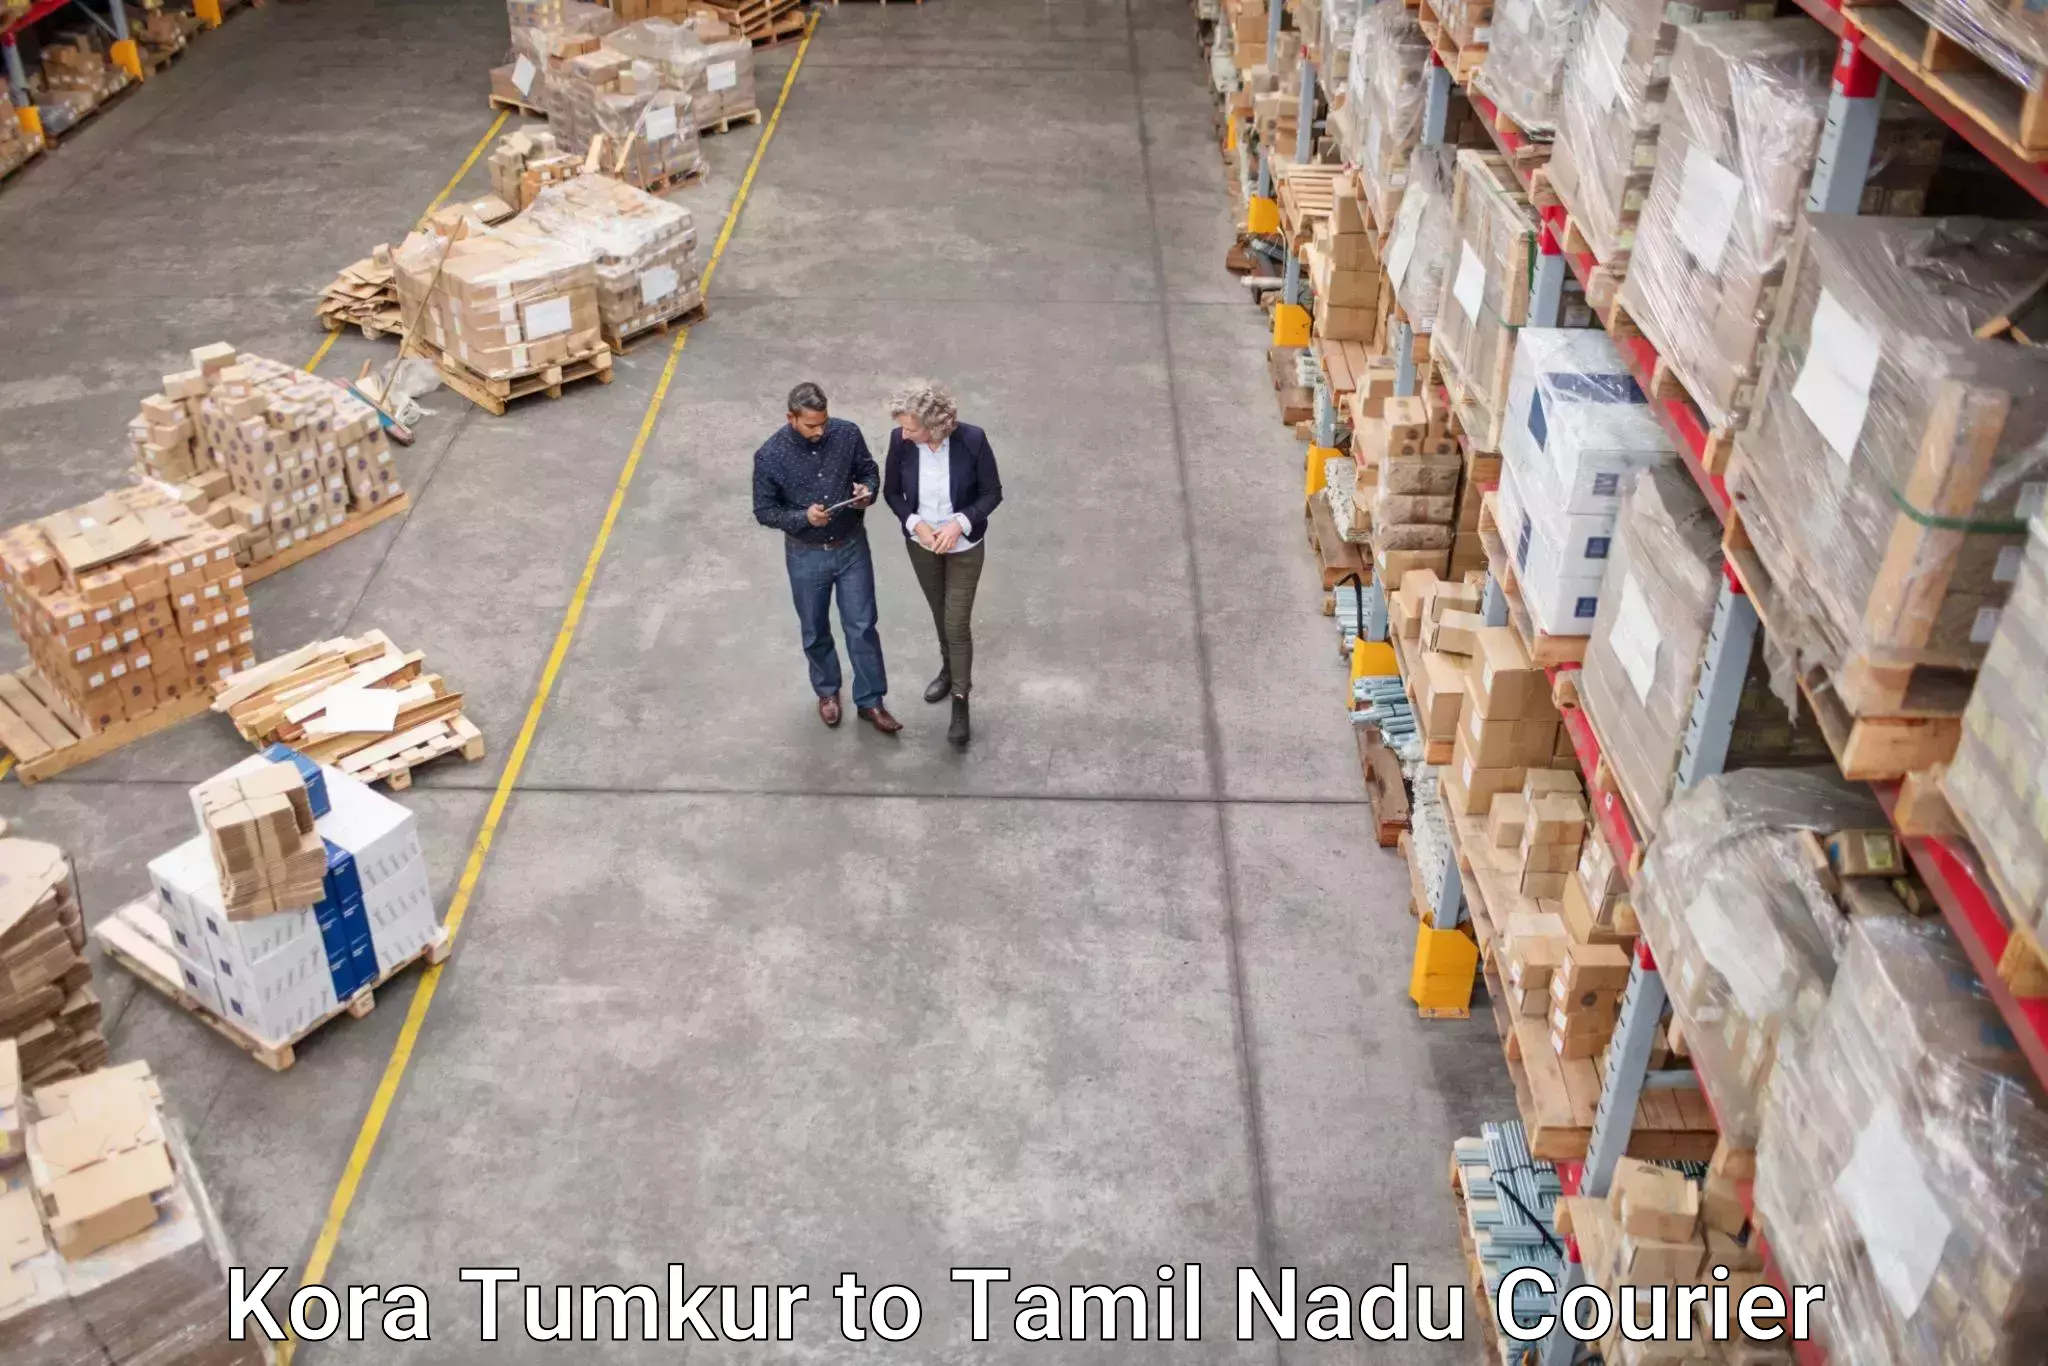 Quality courier services Kora Tumkur to Tiruturaipundi